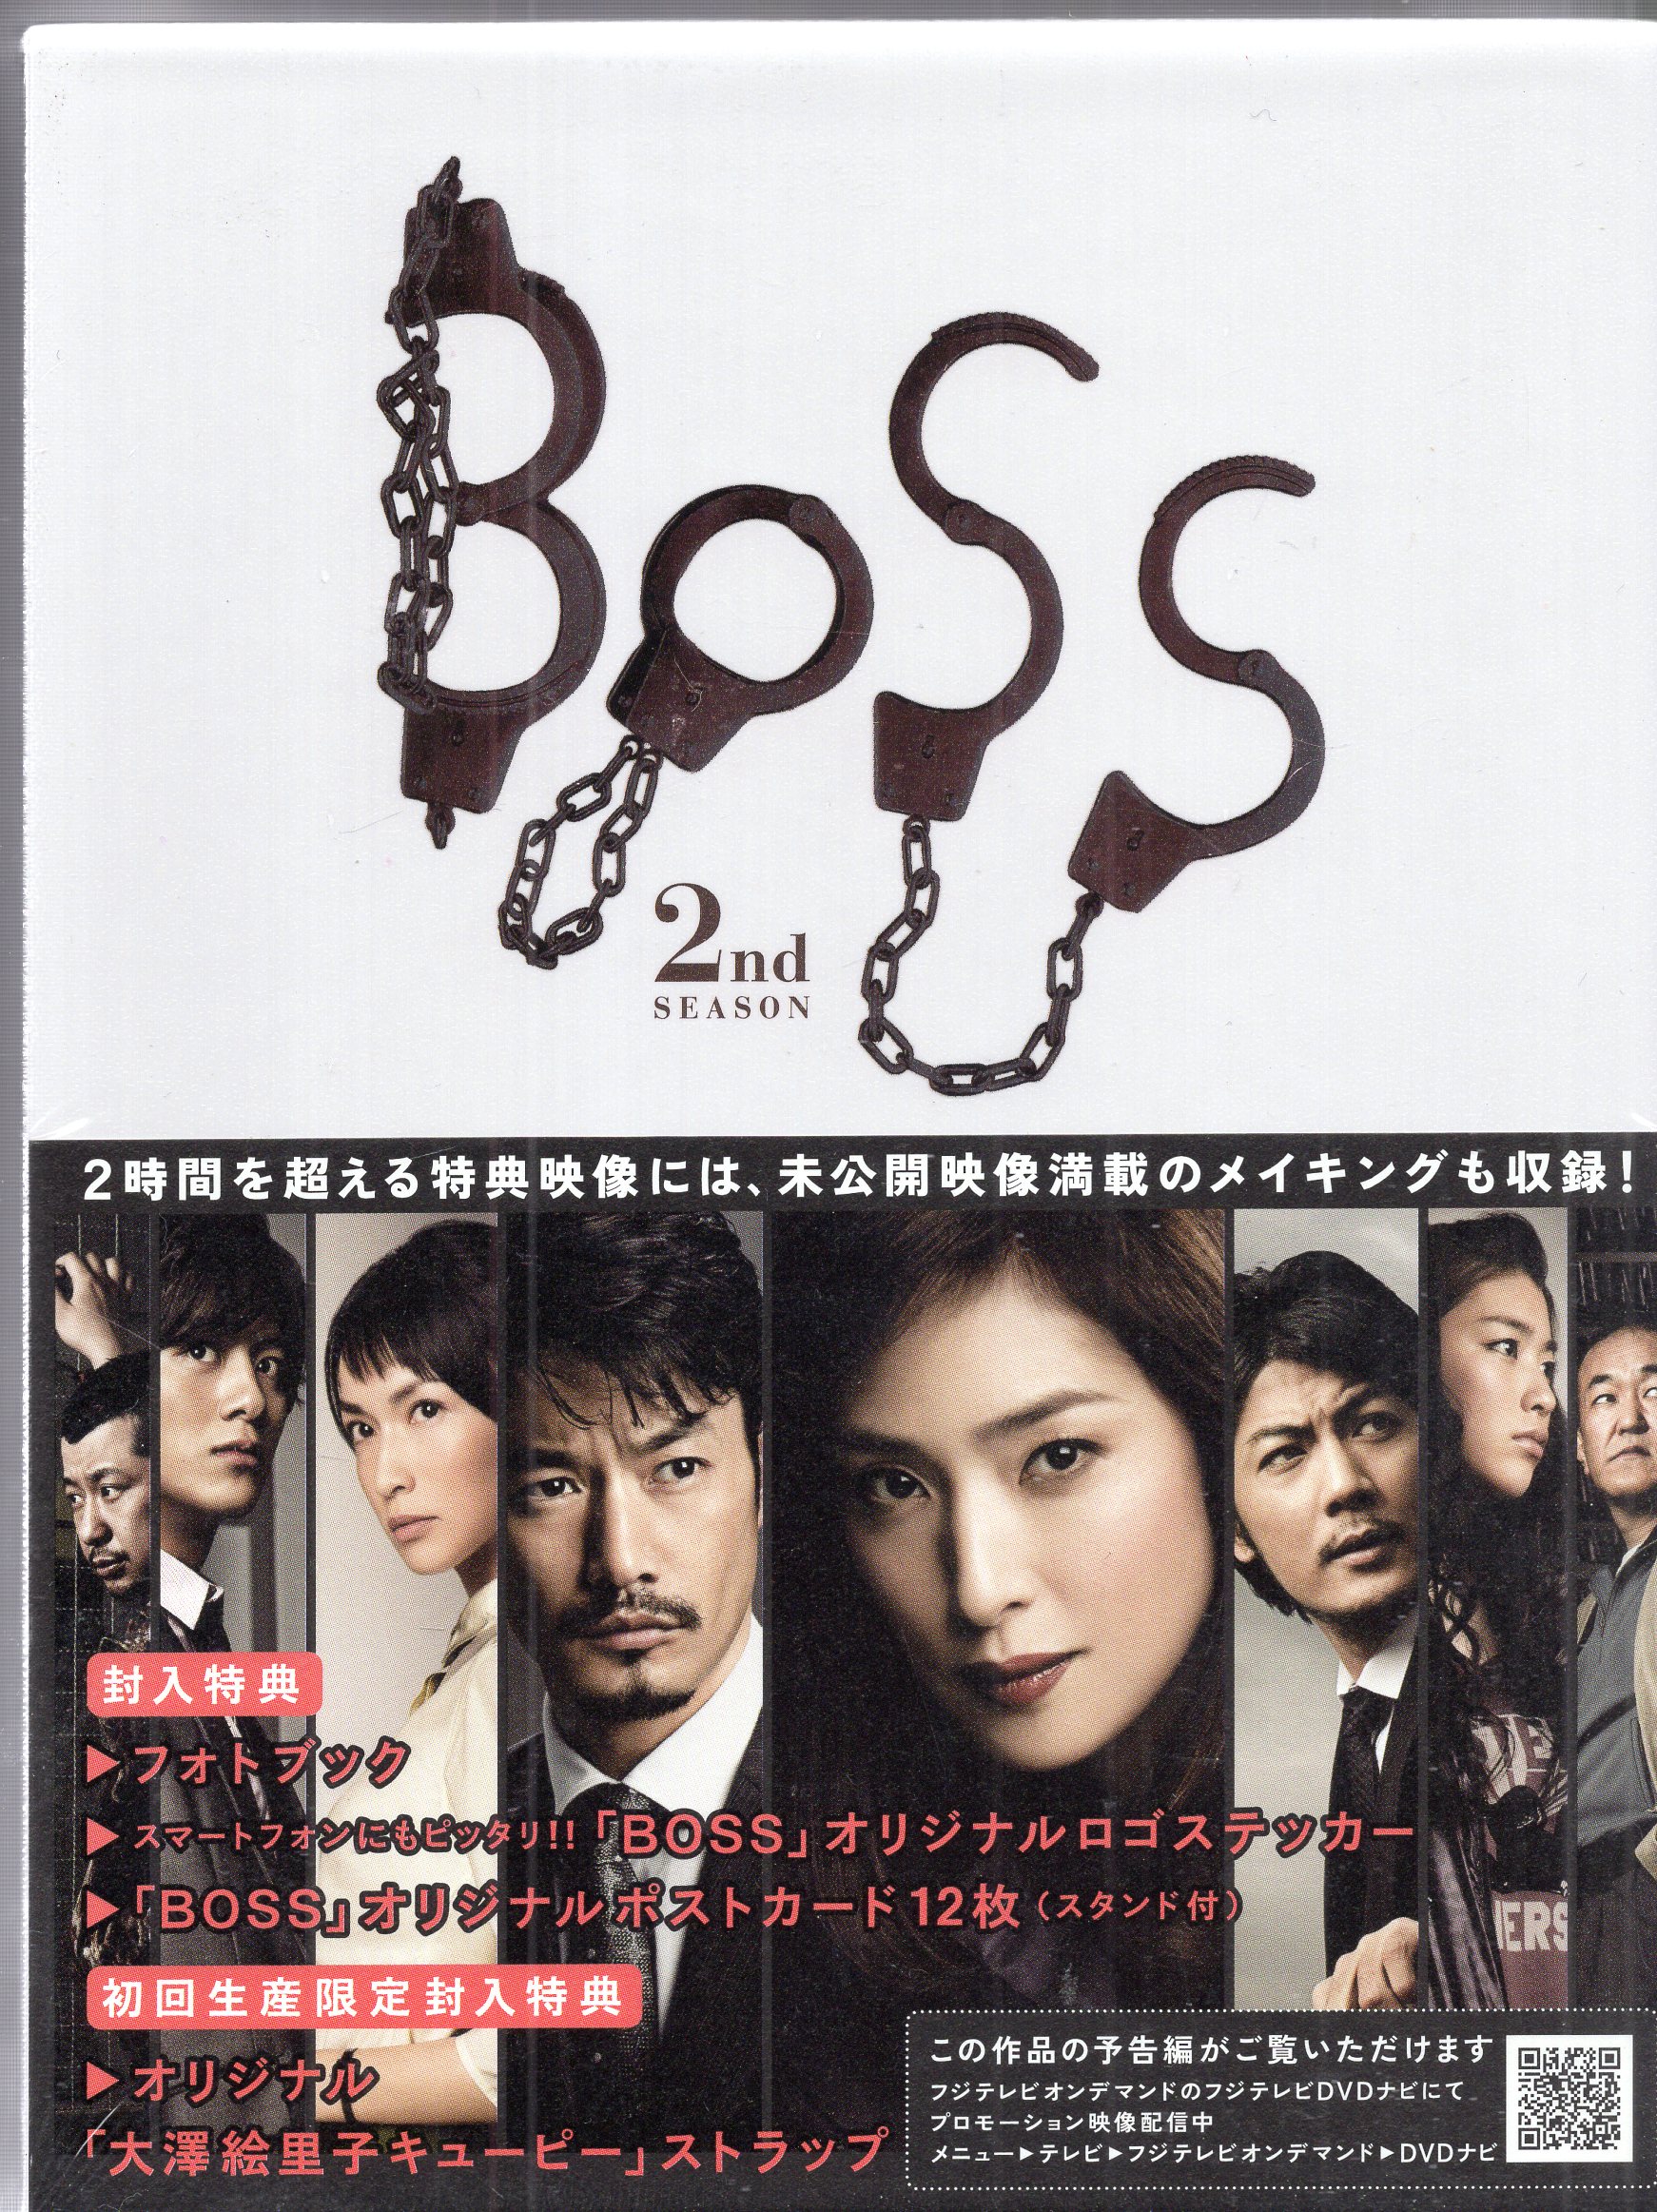 ポニーキャニオン ドラマDVD 天海祐希 初回)BOSS 2nd SEASON DVD-BOX ...